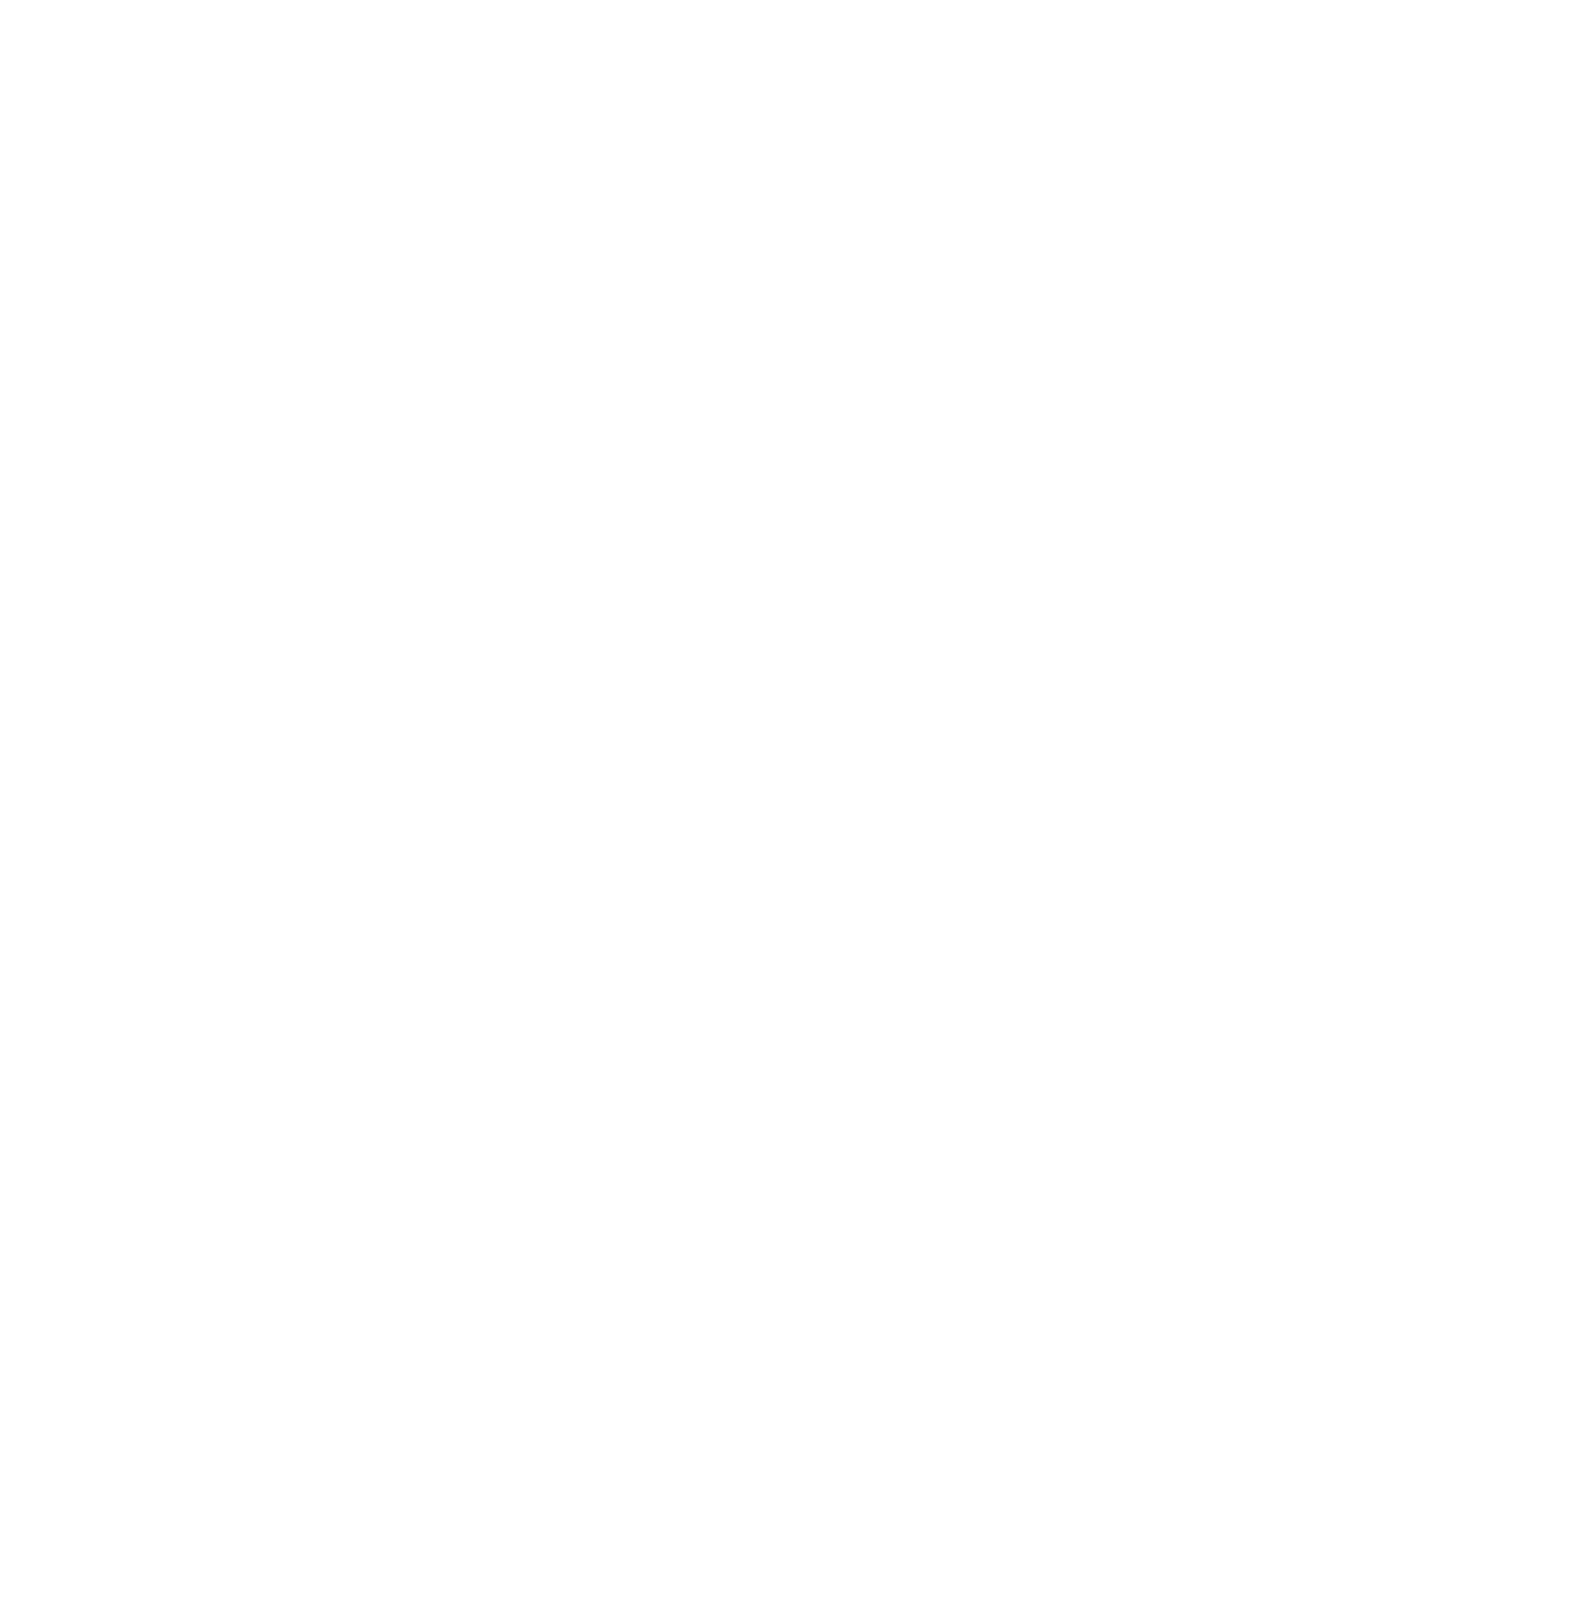 Sonendo logo for dark backgrounds (transparent PNG)